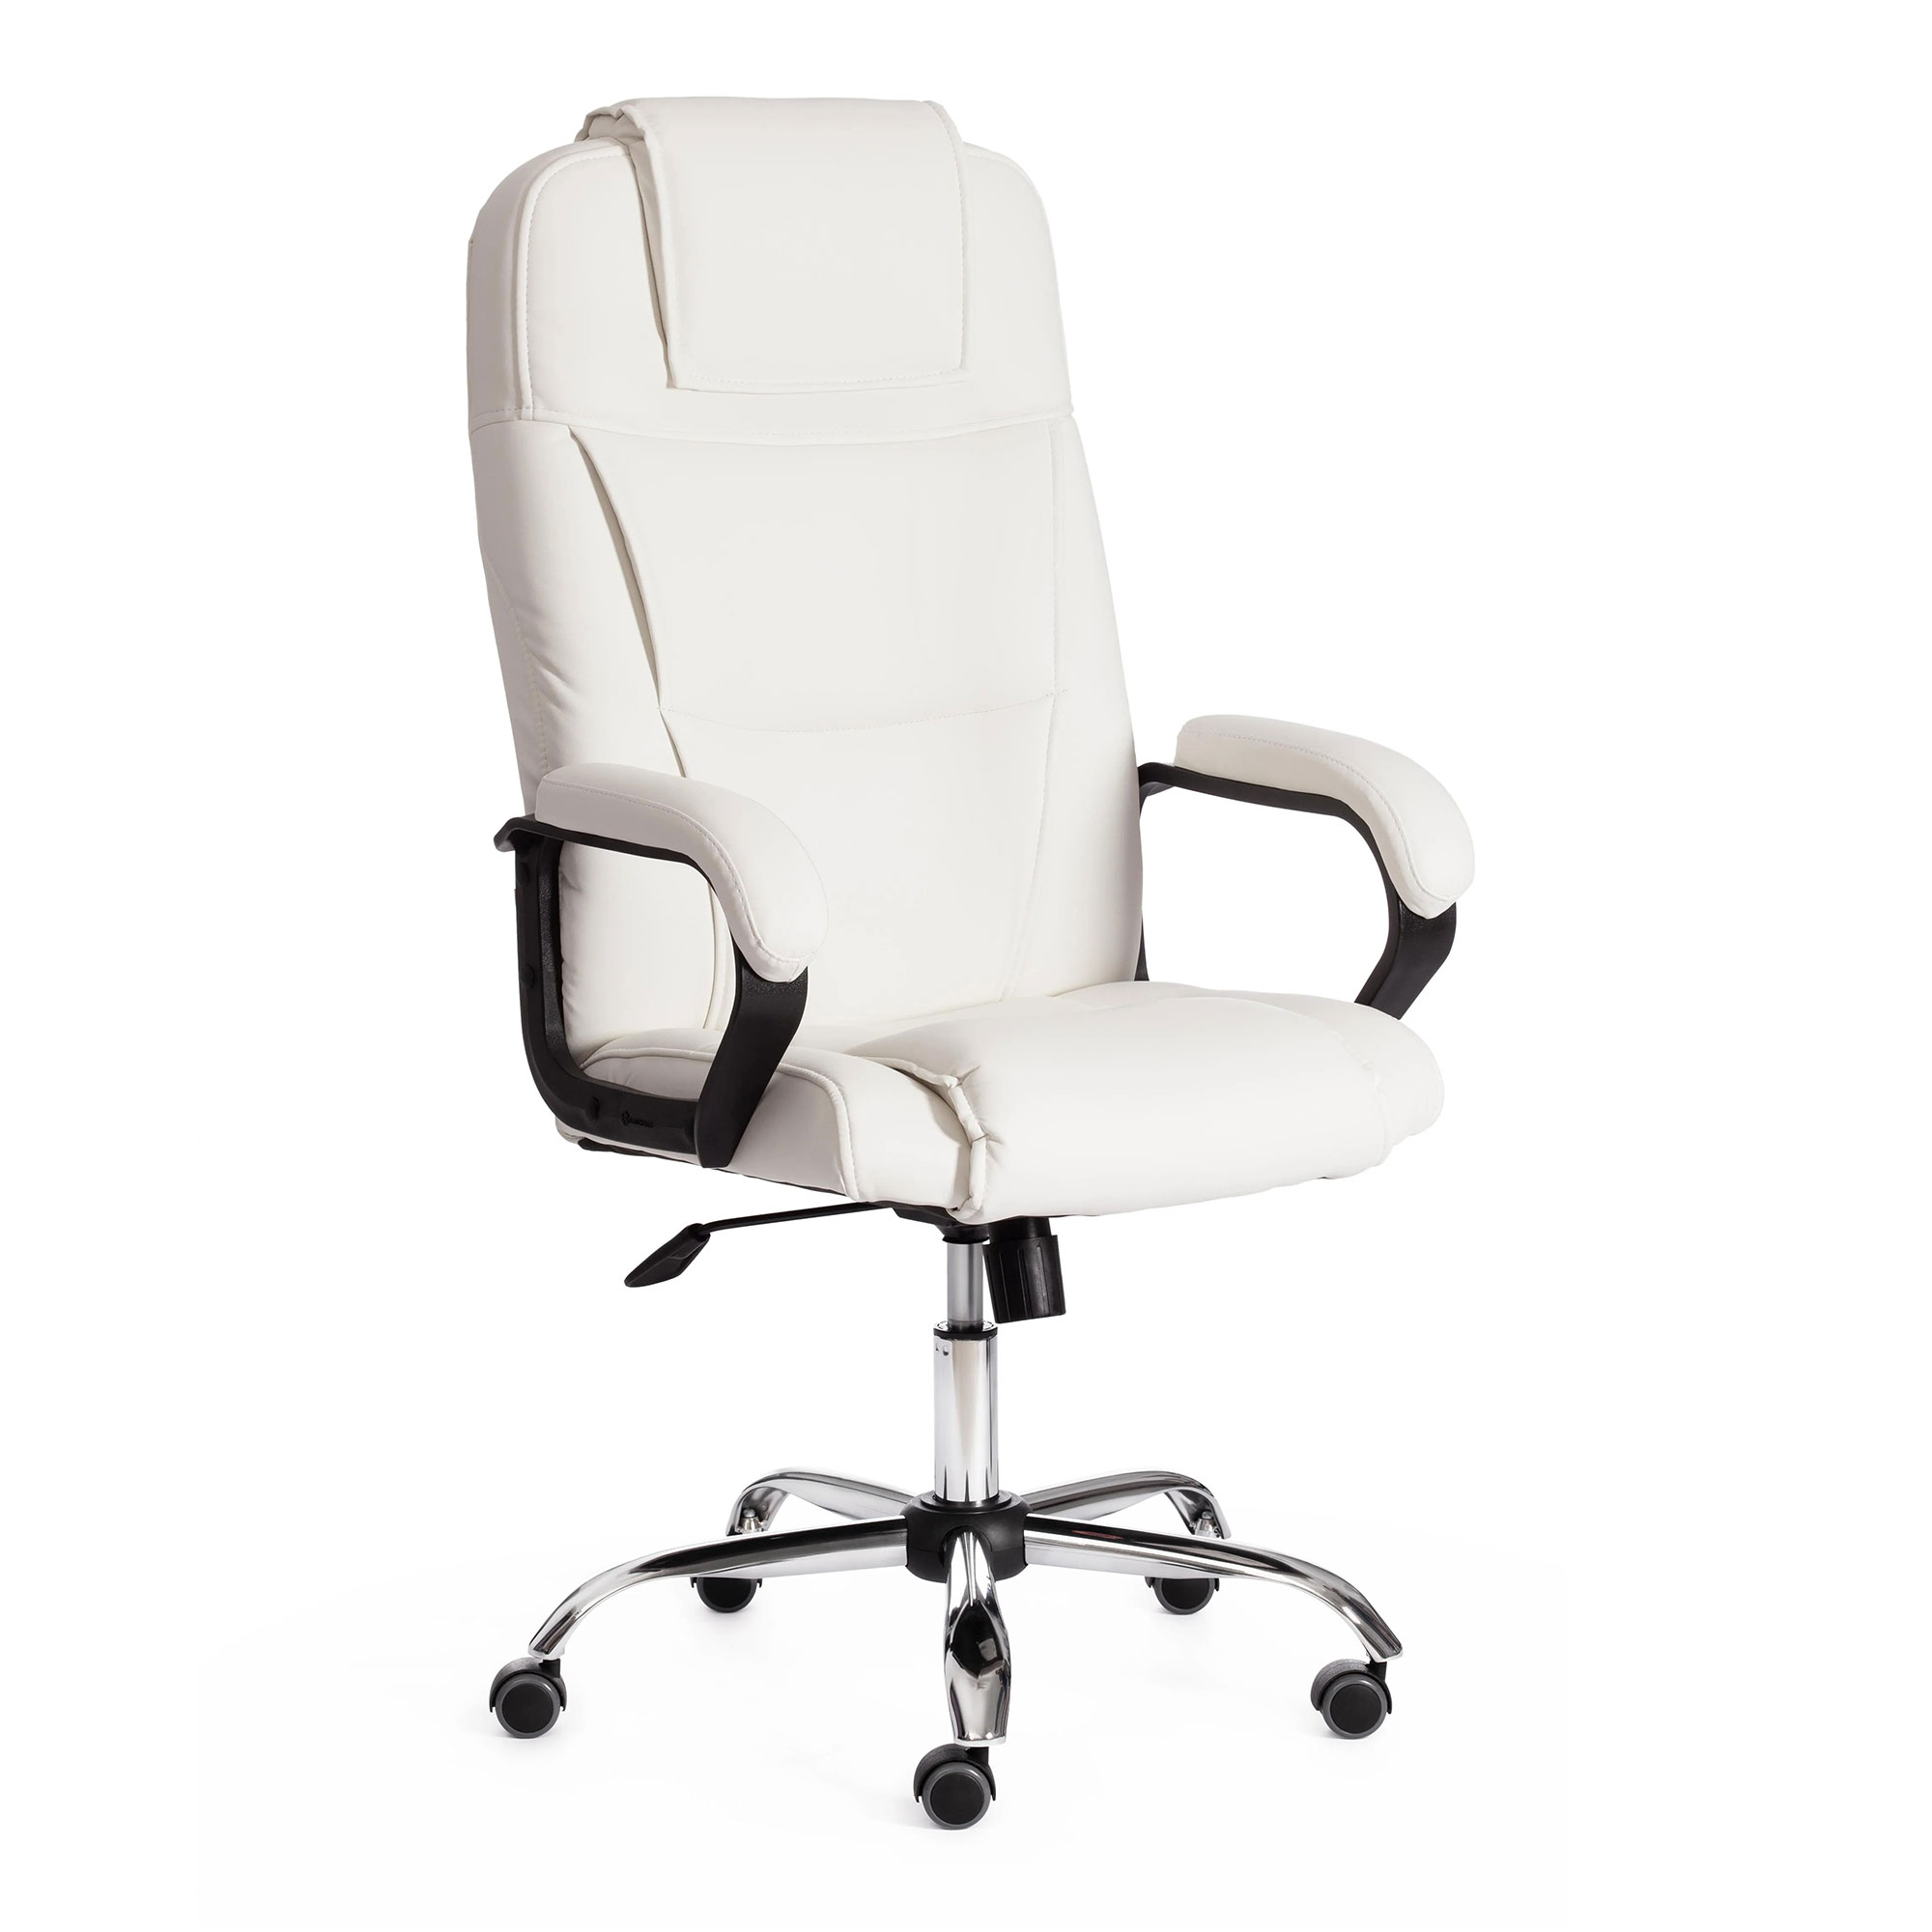 Компьютерное кресло TC Bergamo белое 67х47х140 см (19400) компьютерное кресло tc bergamo чёрное 67х47х140 см 19370